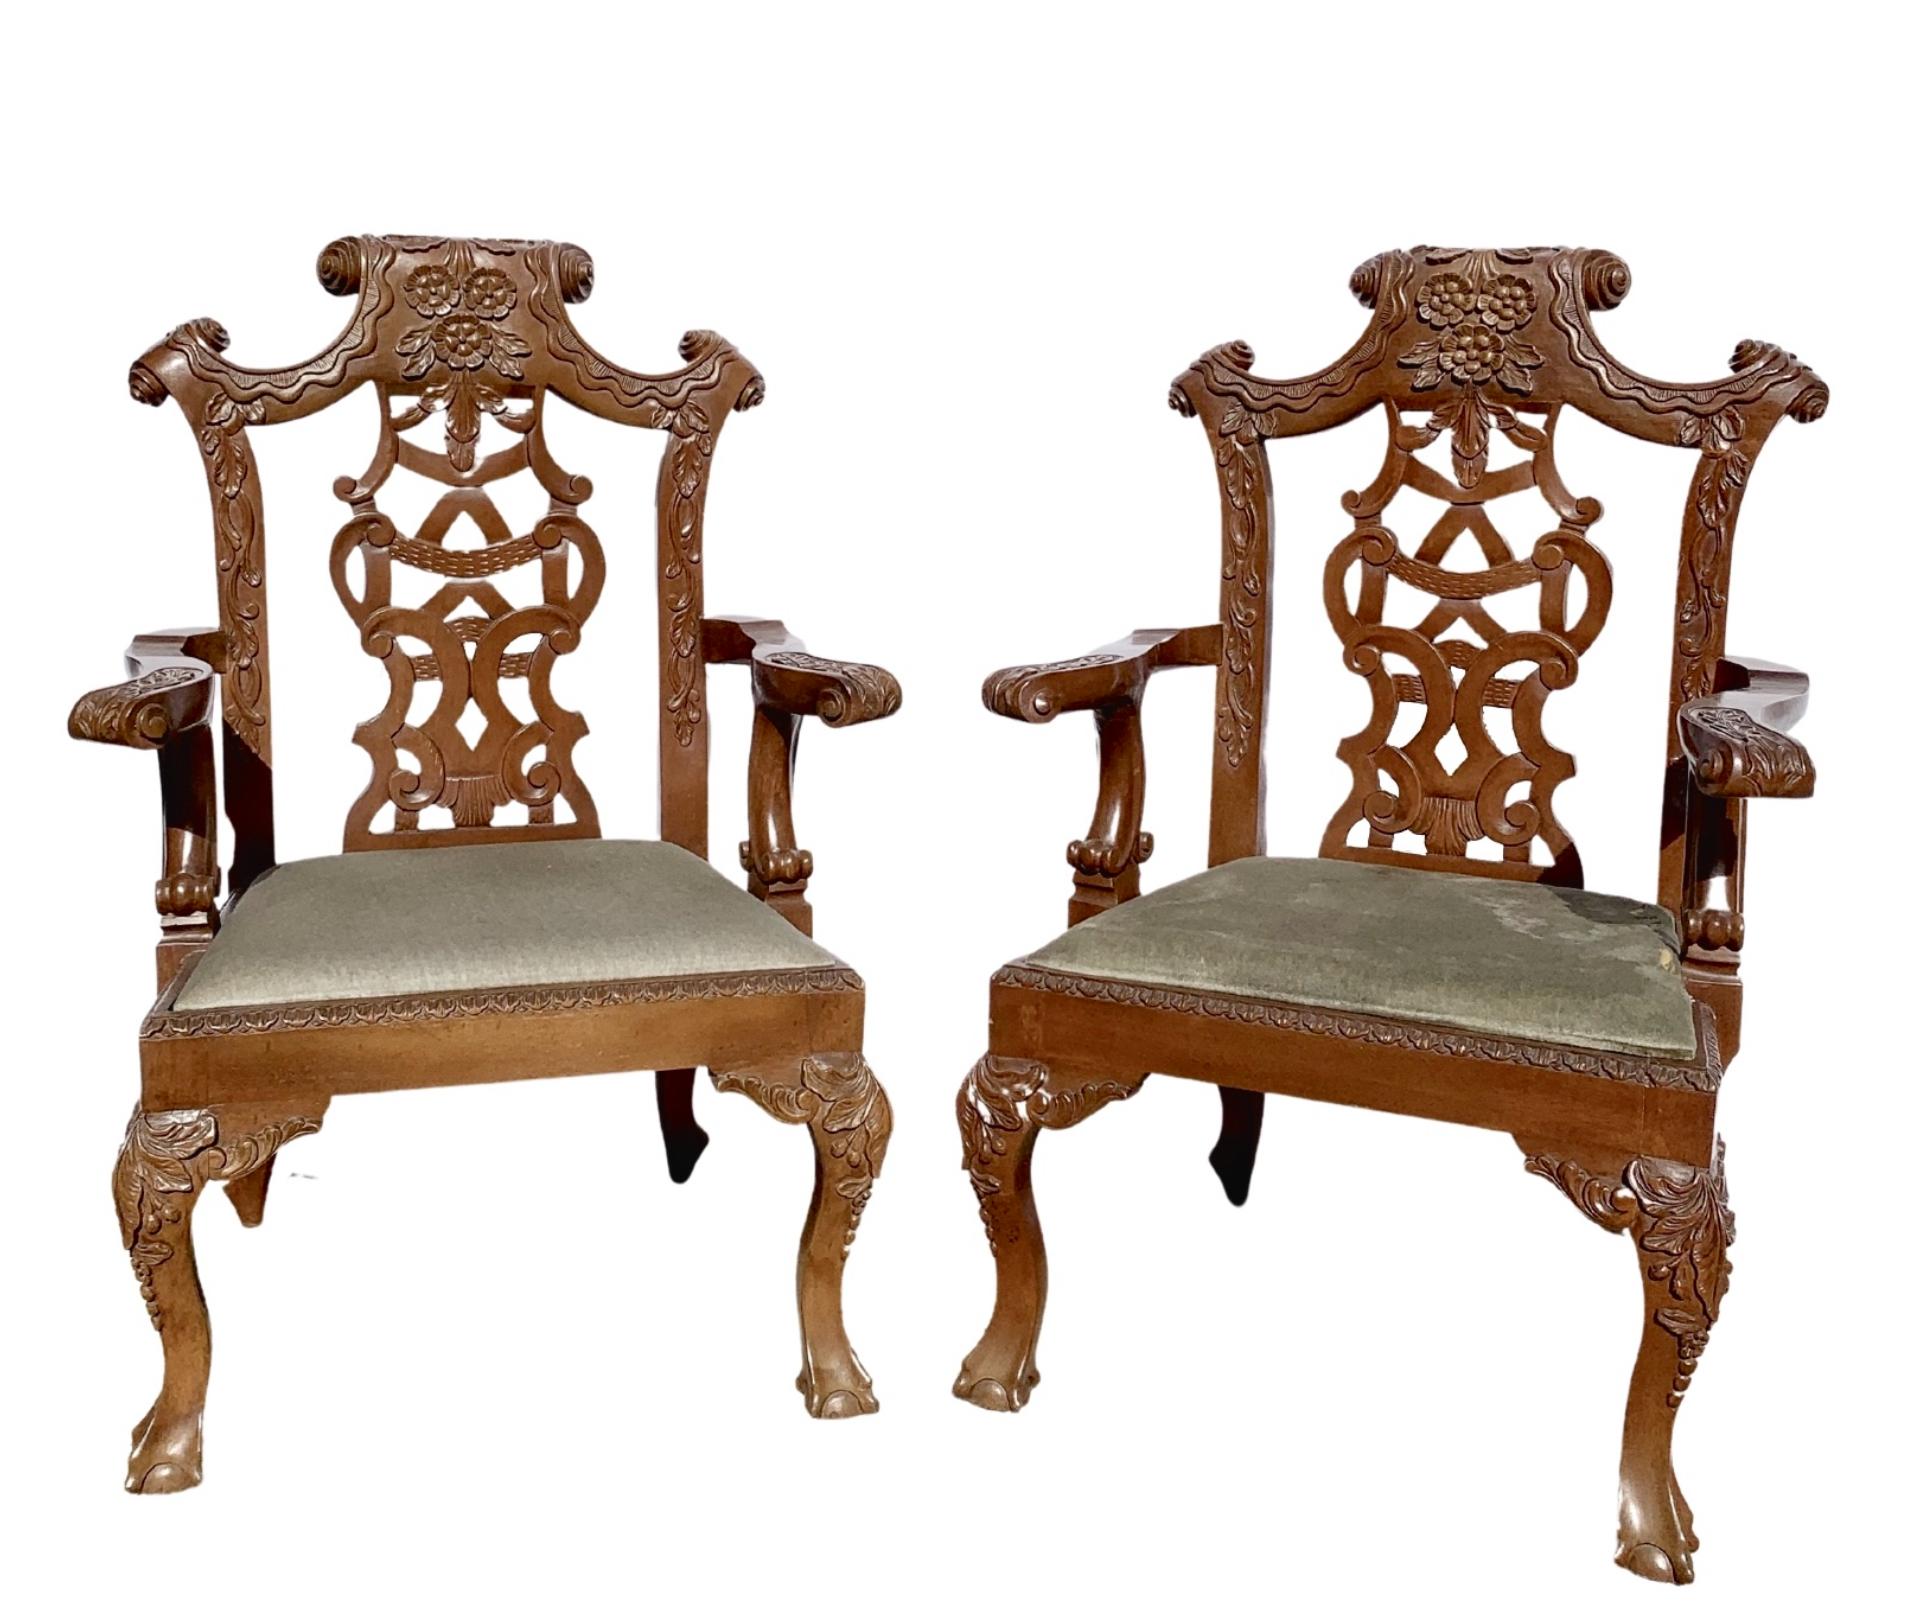 Beau canapé deux places et deux chaises de sculpteur en acajou sculpté à la main du 20ème siècle. 
Même propriétaire depuis 35 ans. 
Il faisait partie de l'ameublement d'un consulat européen où il était utilisé quotidiennement.
La tapisserie